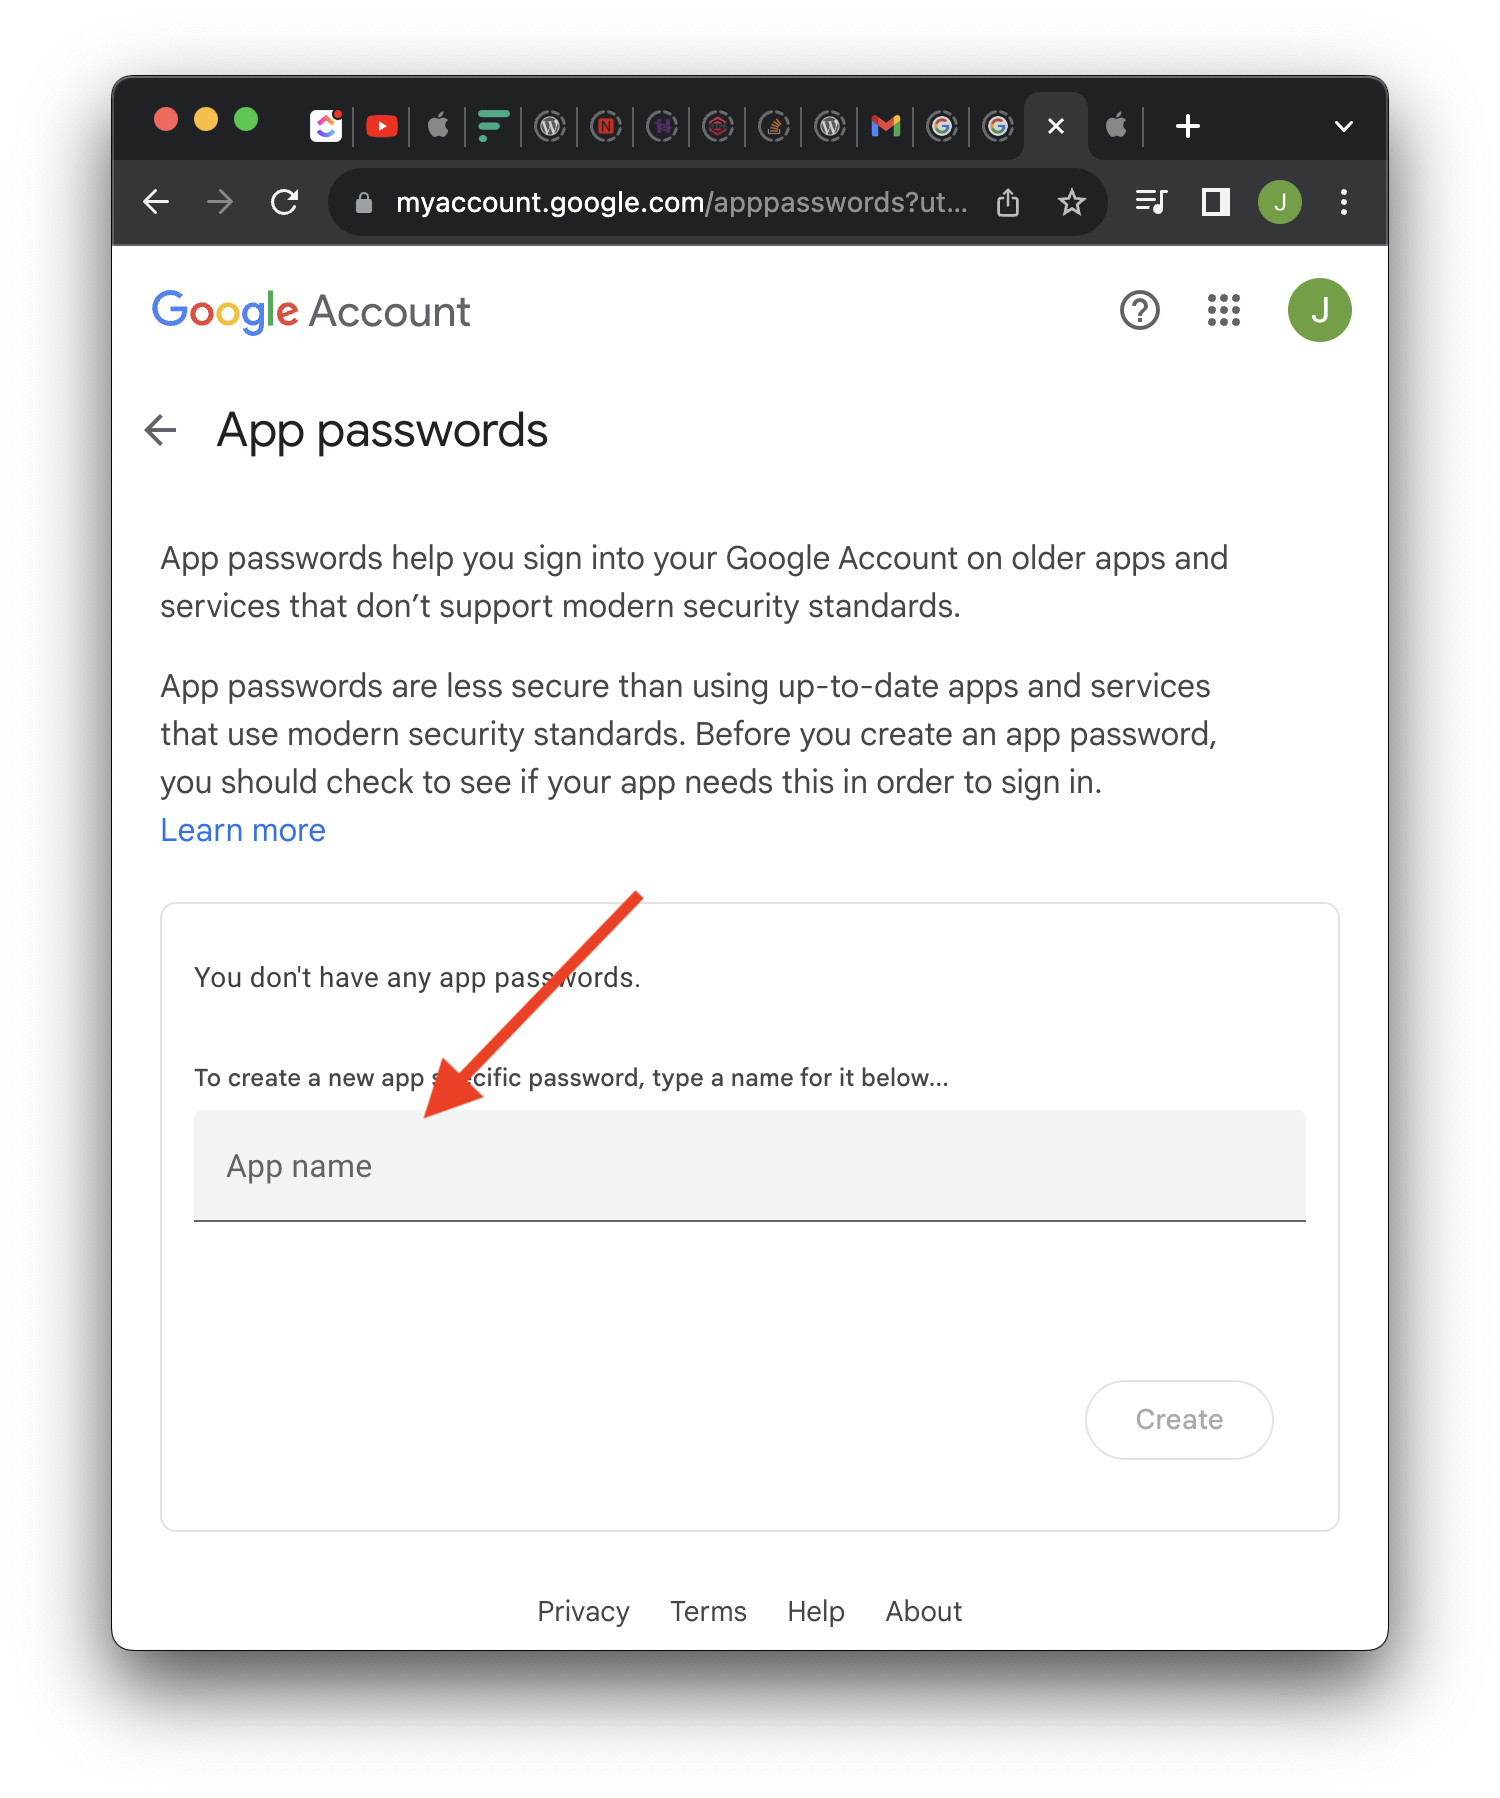 Google Account App Passwords